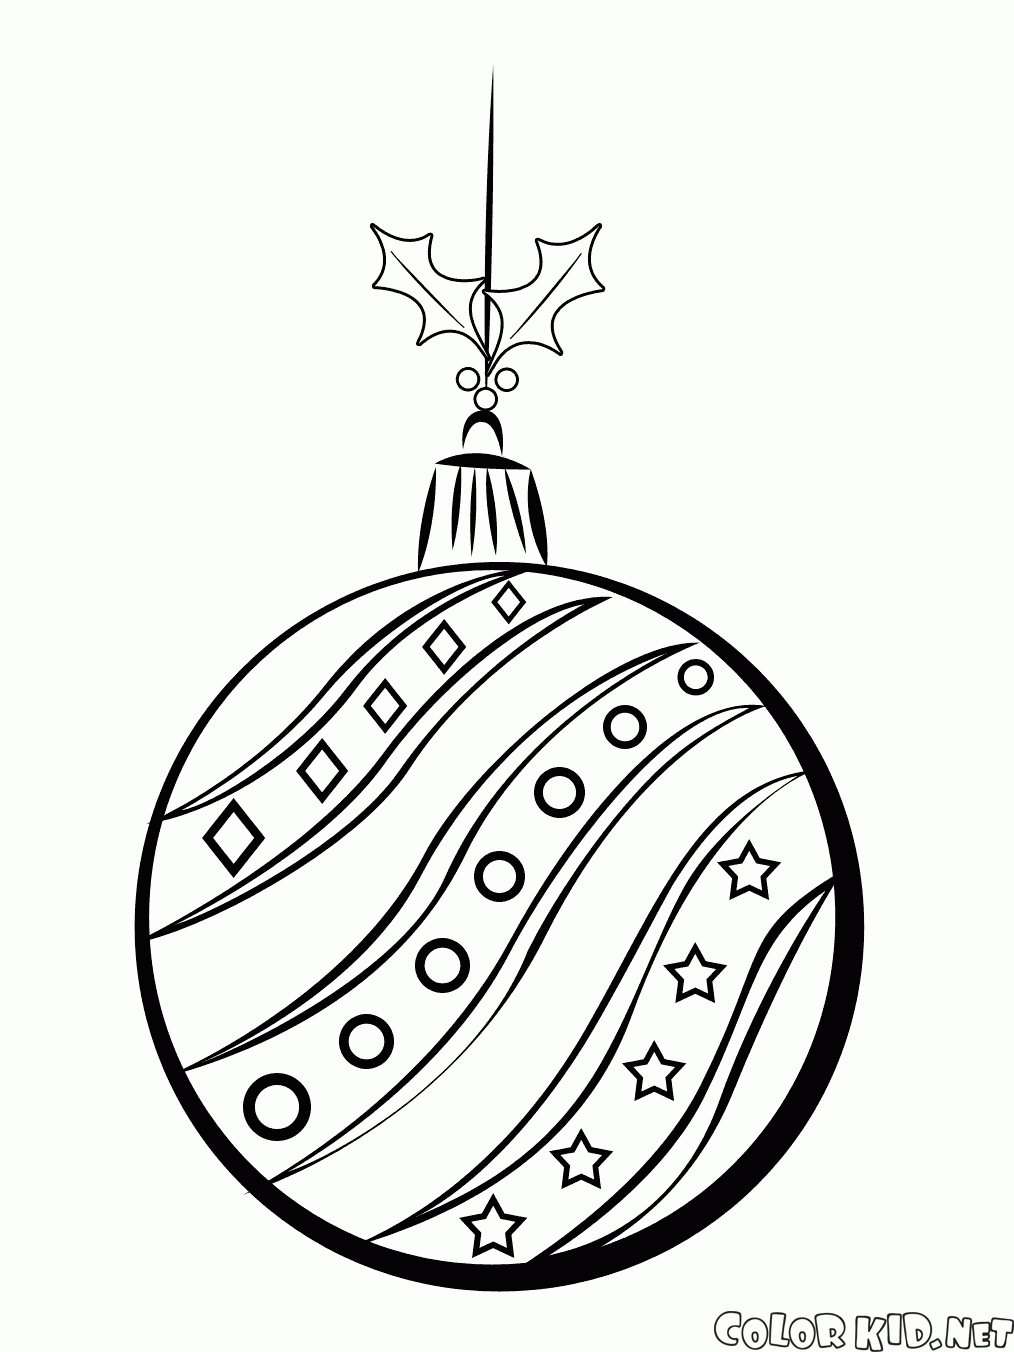 Coloring page - Bola da árvore de Natal em uma corda